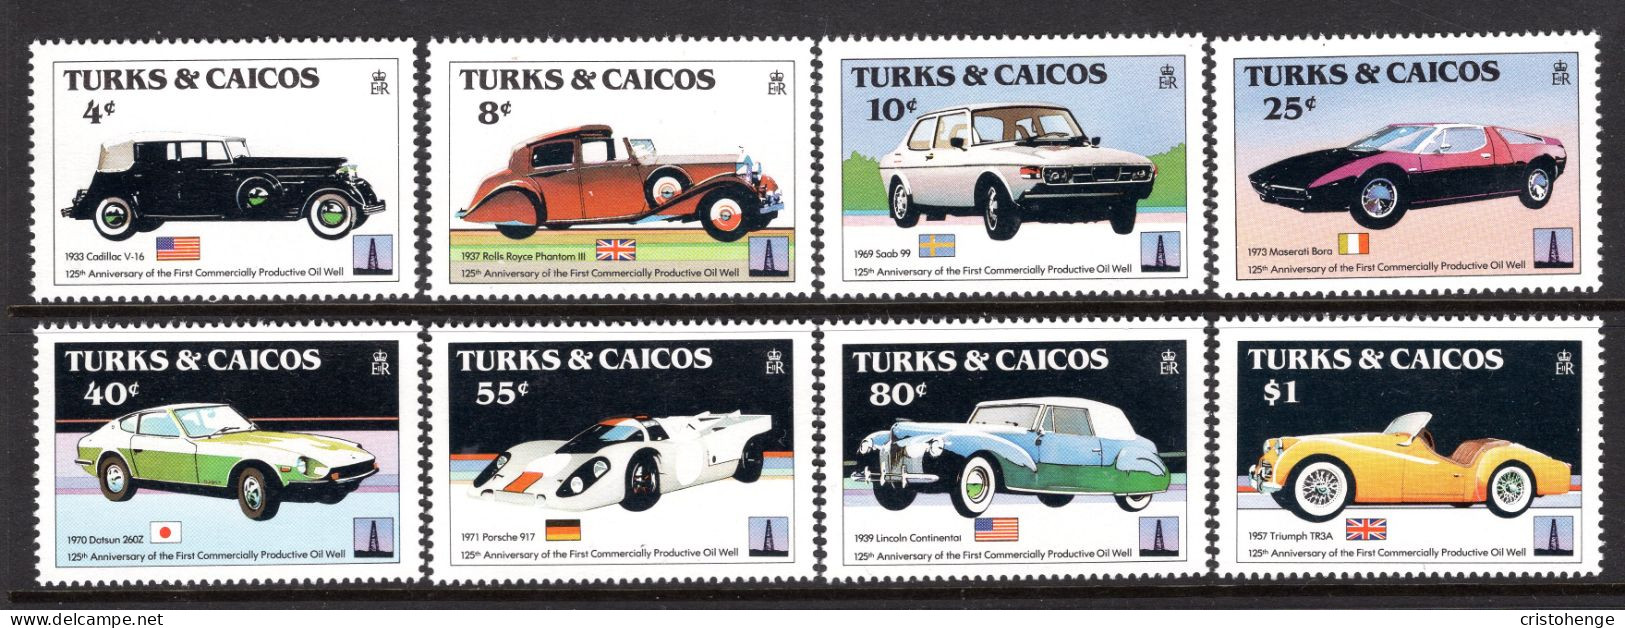 Turks & Caicos Islands 1984 Classic Cars Set MNH (SG 796-803) - Turks And Caicos